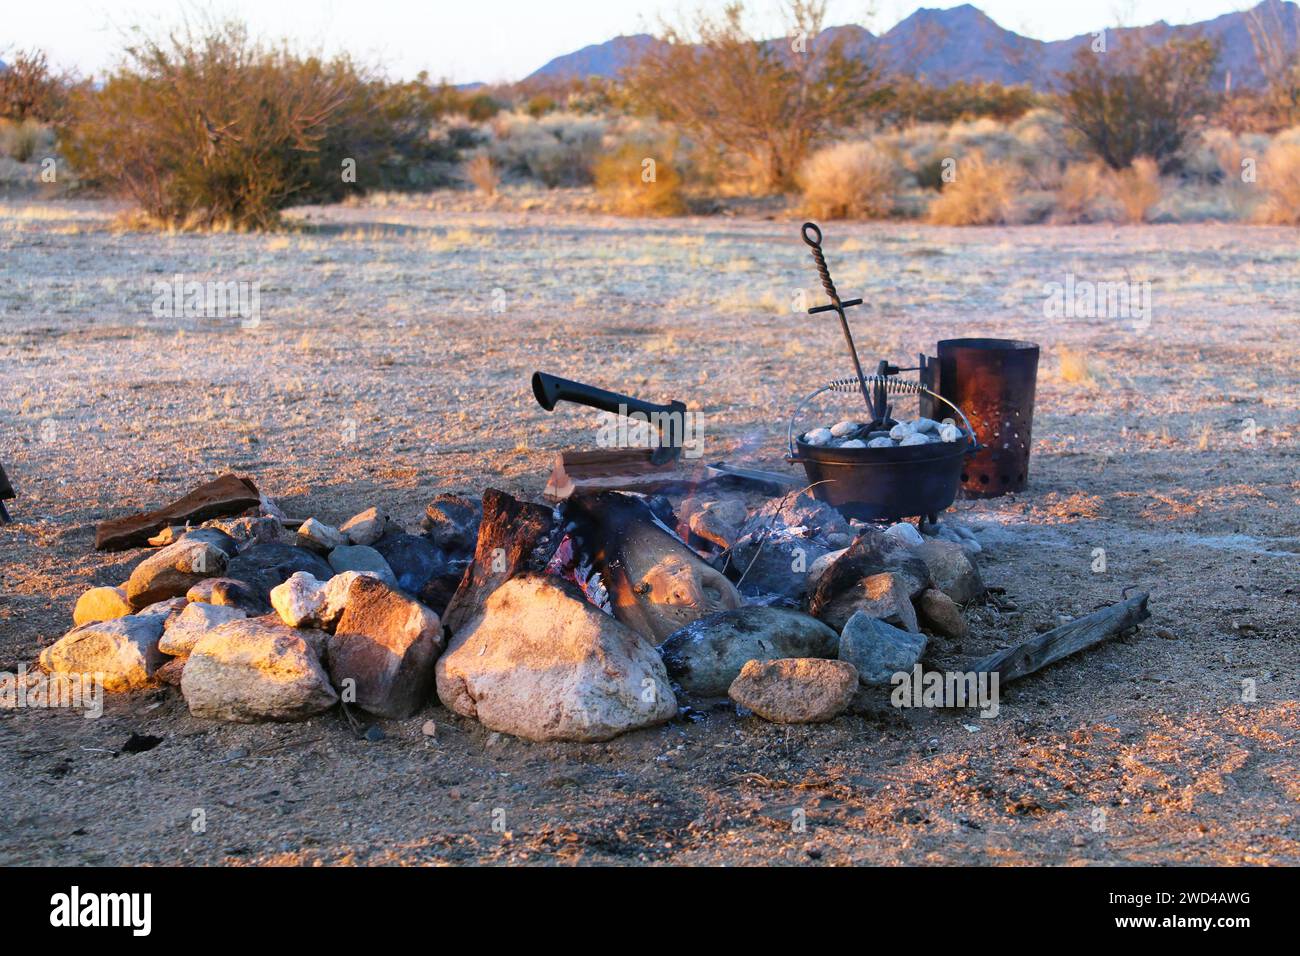 Cucina olandese all'aperto nel deserto dell'Arizona Foto Stock